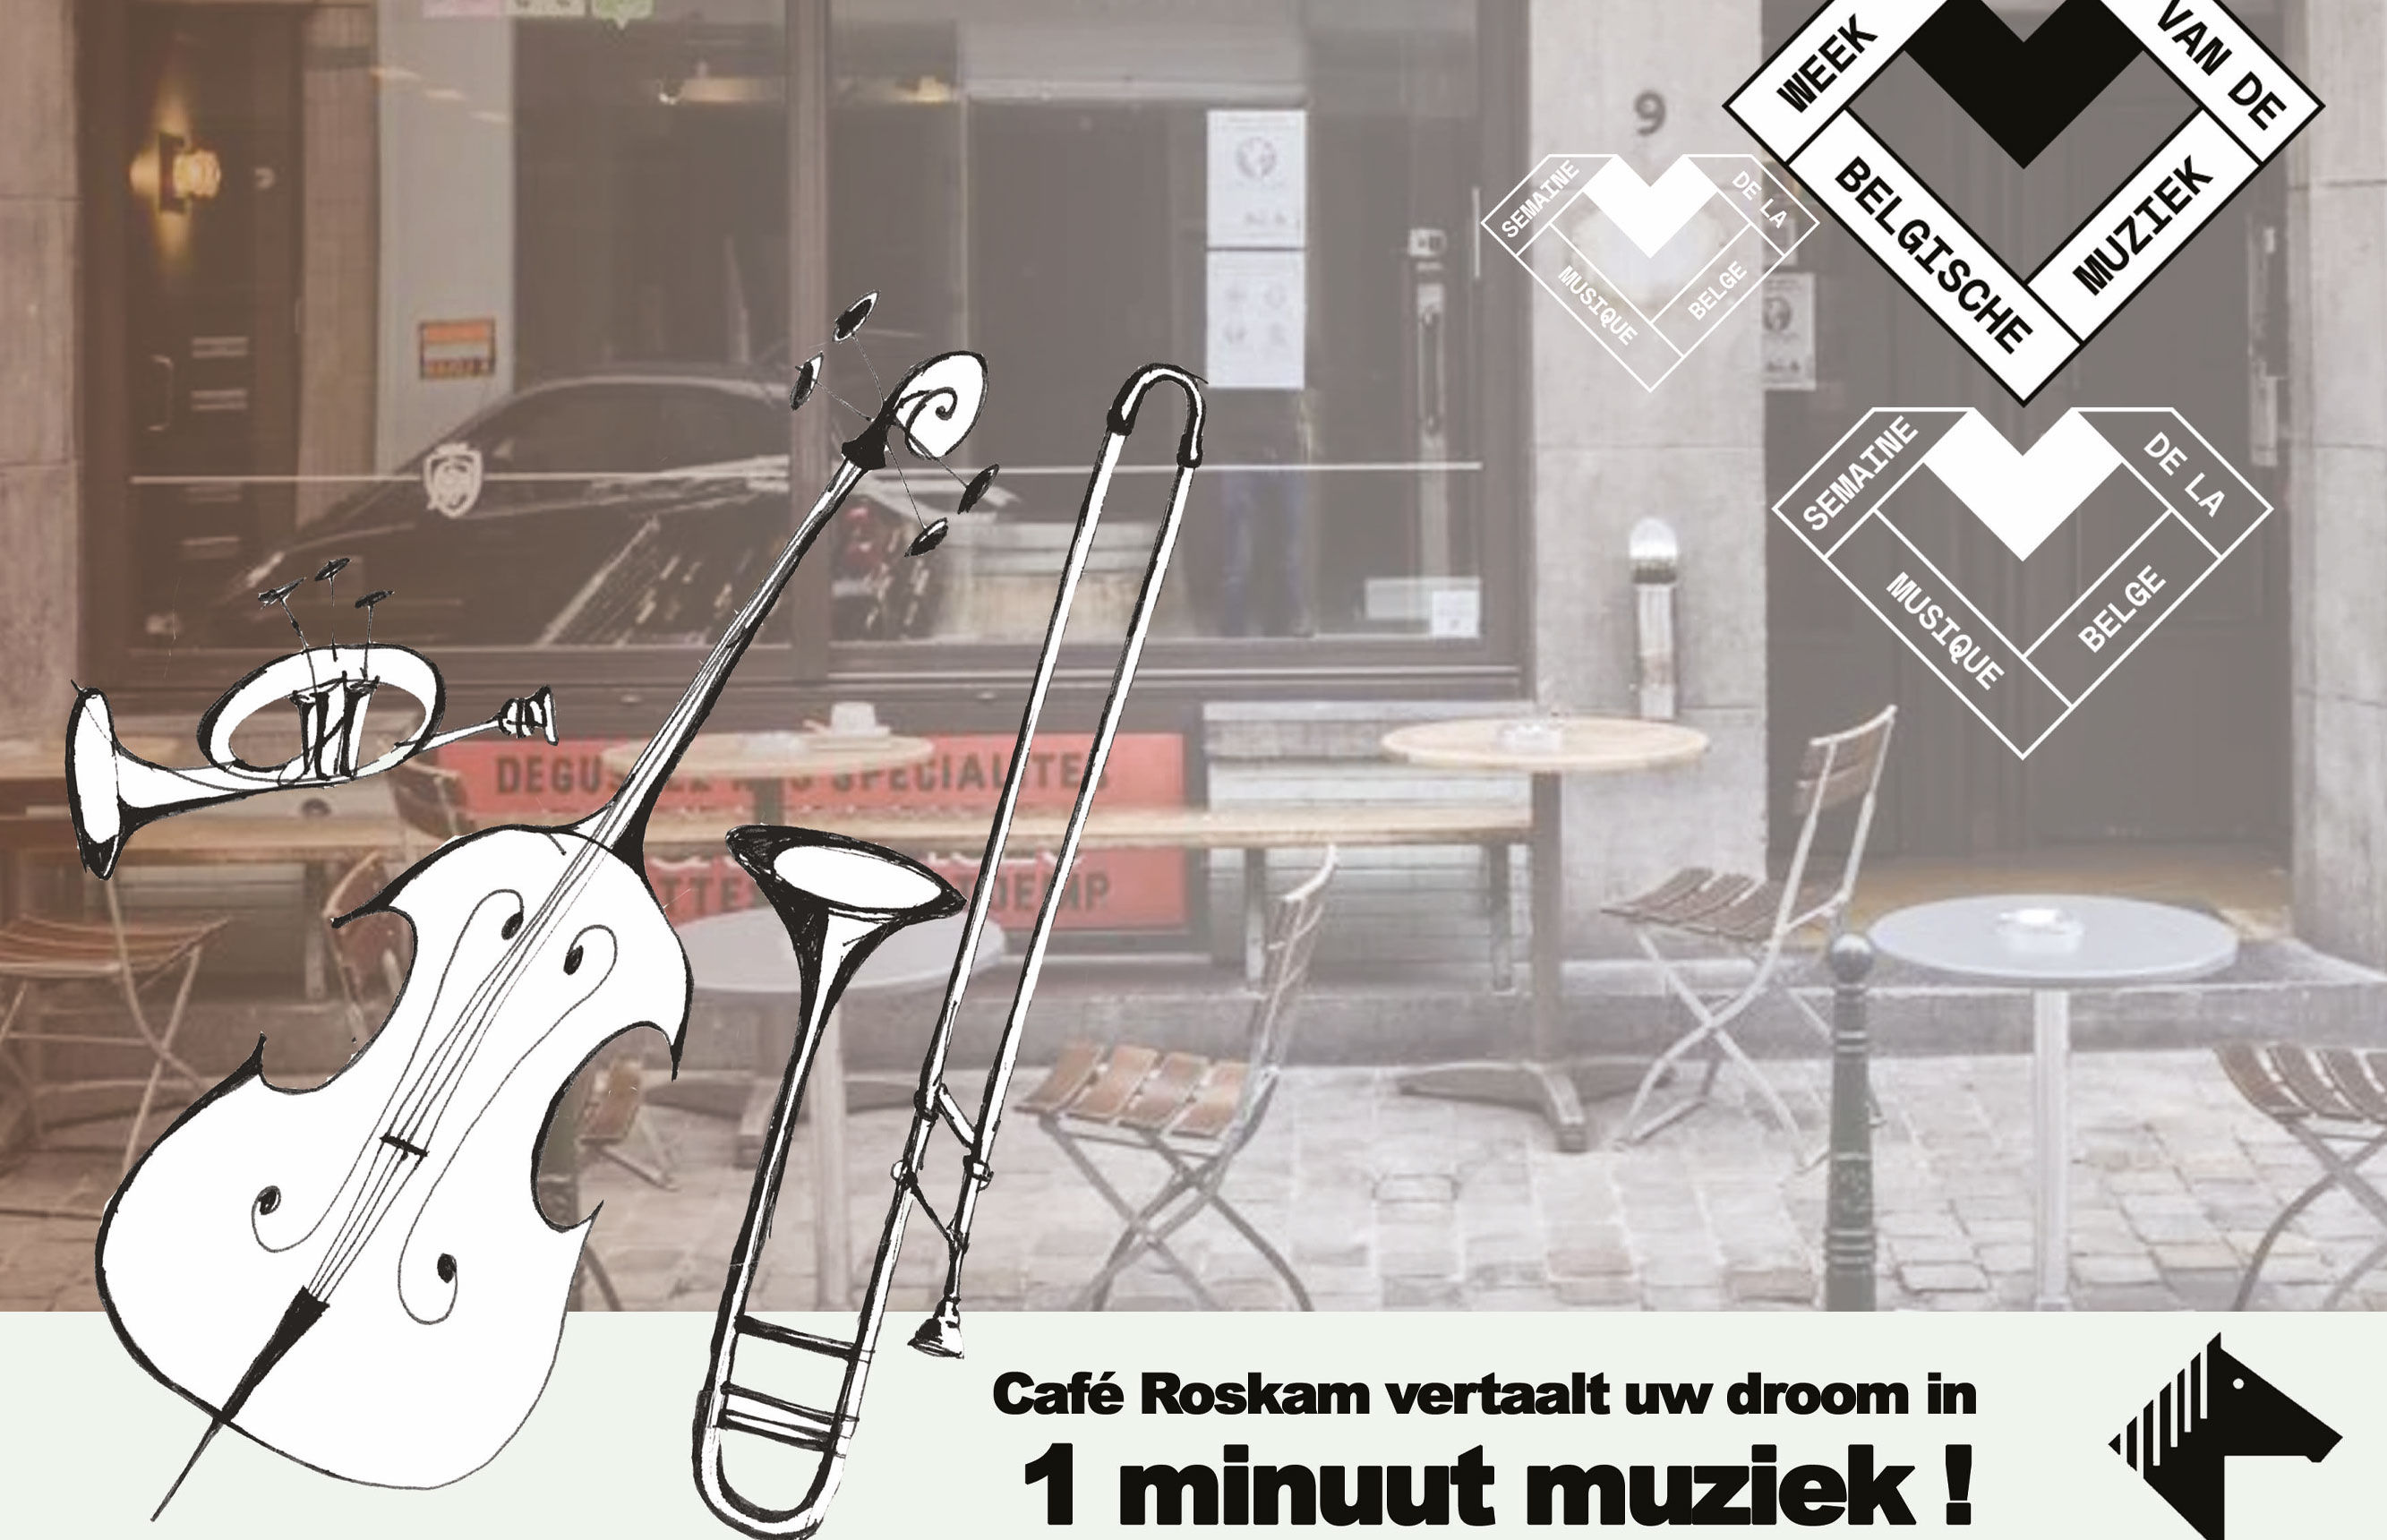 Café Roskam vertaalt uw dromen, wensen en frustraties in 1 minuut muziek